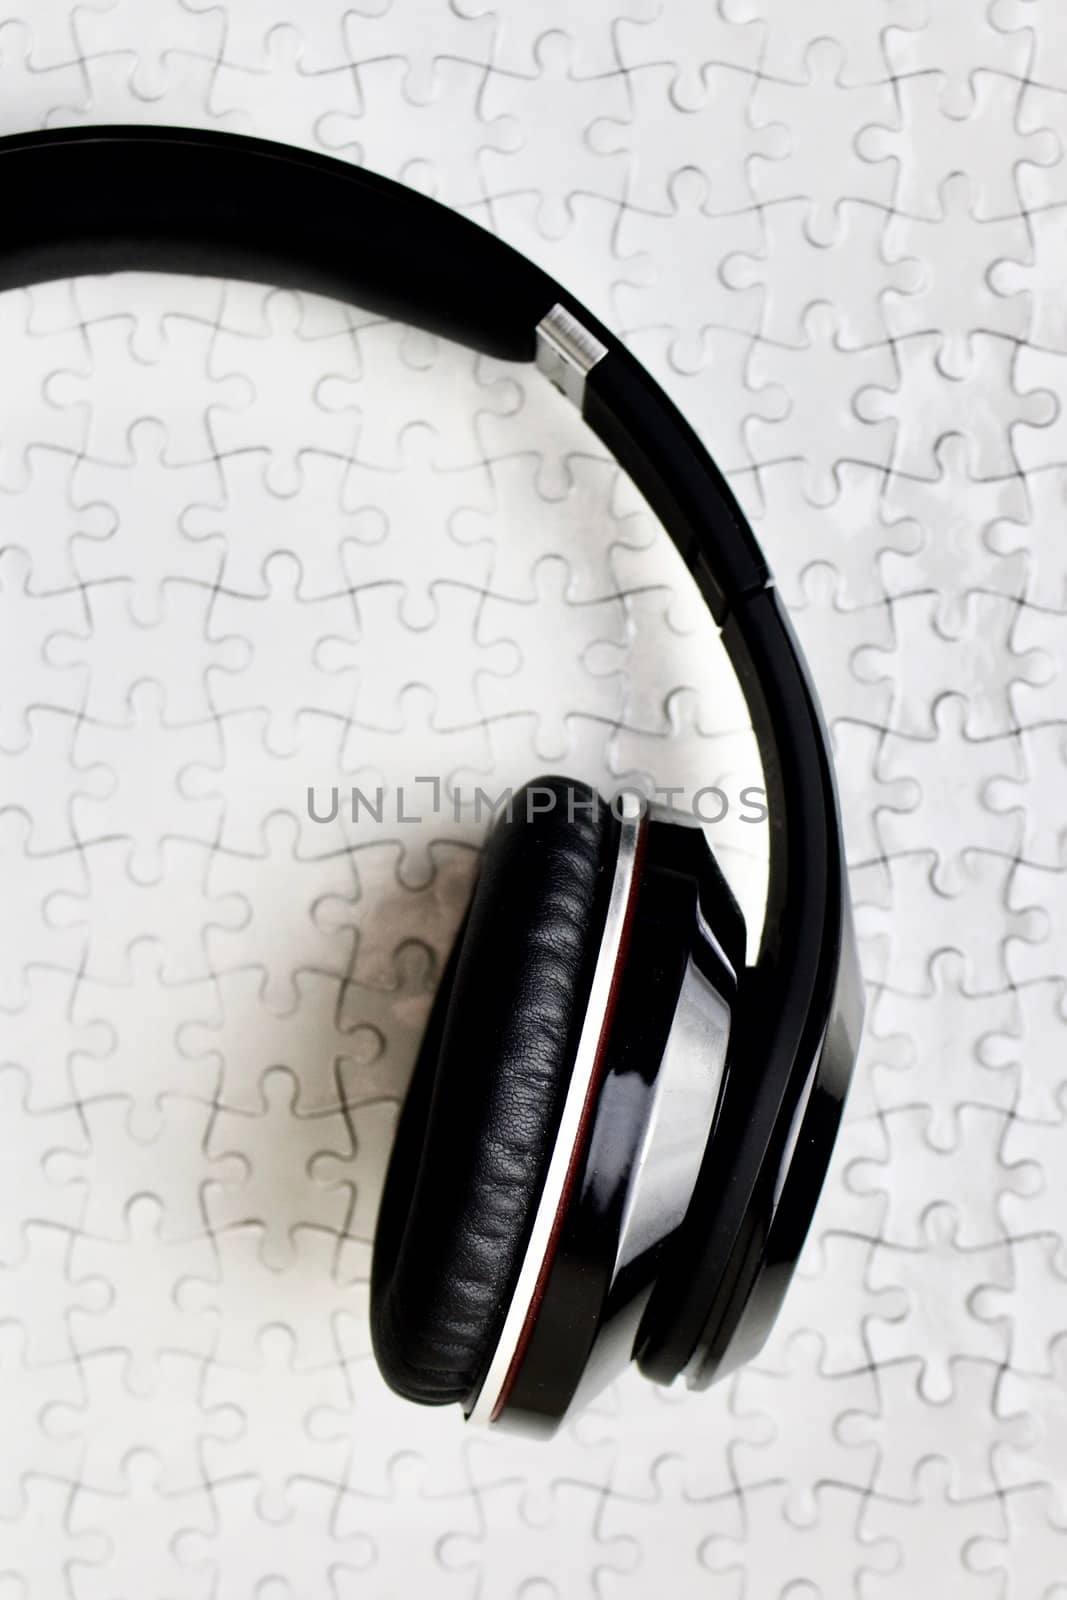 Black headphones on white puzzles